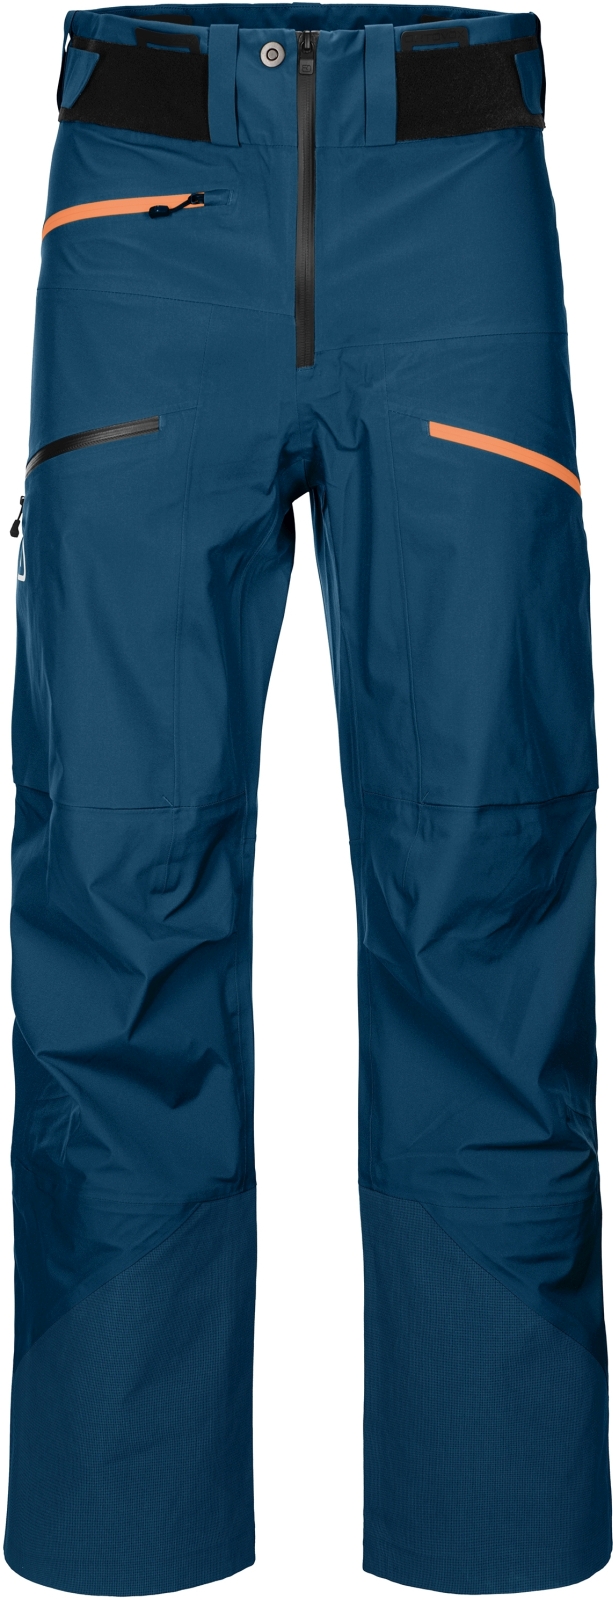 E-shop Ortovox 3l deep shell pants m - petrol blue S